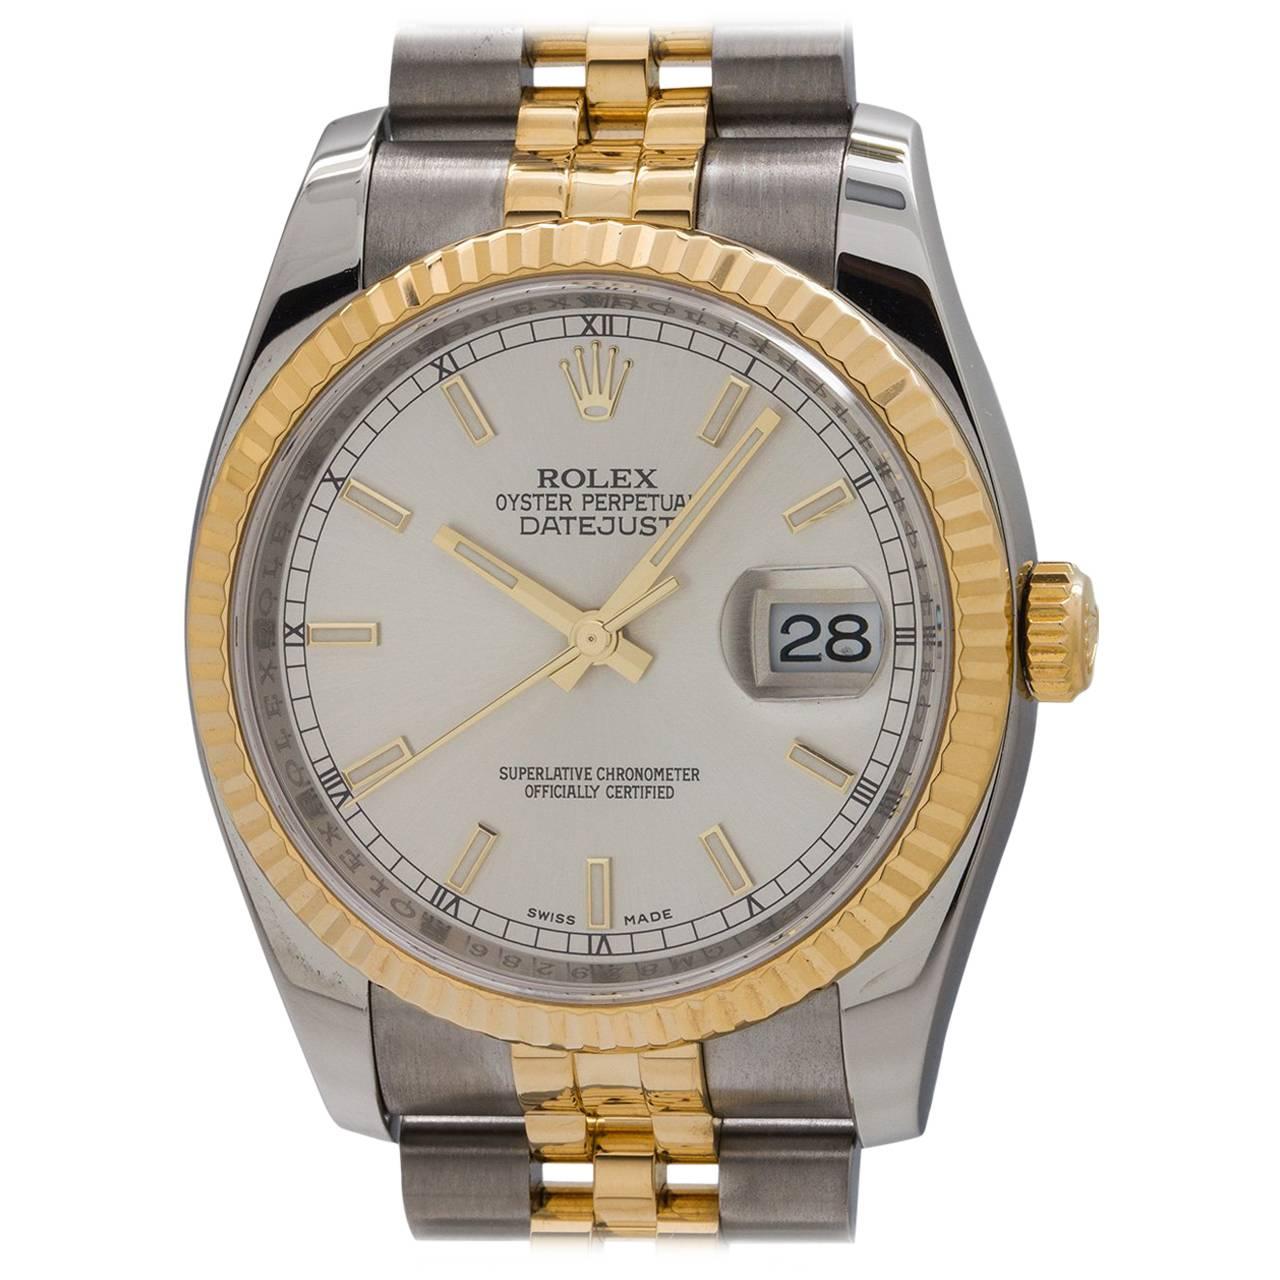 Rolex Yellow Gold Stainless Steel Datejust Wristwatch Ref 116233, circa 2010